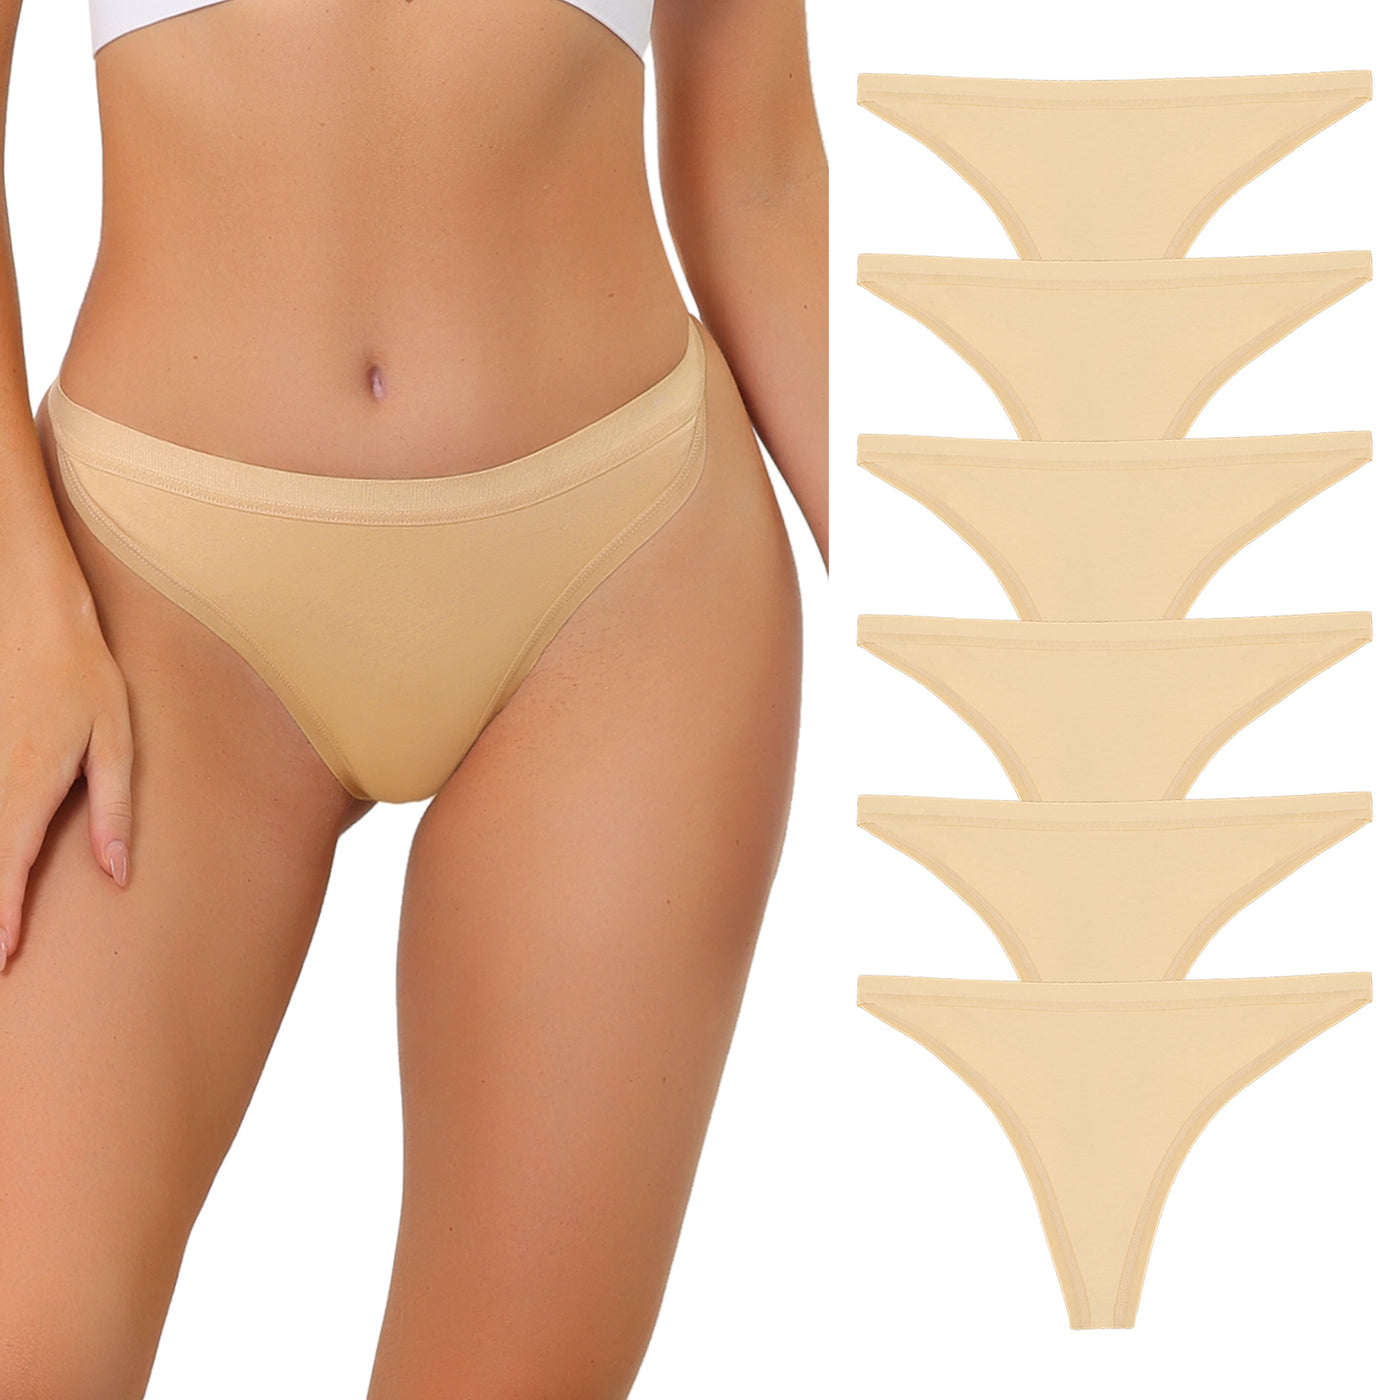 Allegra K Thongs for Women Packs G-String Panties Breathable Hi-Cut Tangas Underwear